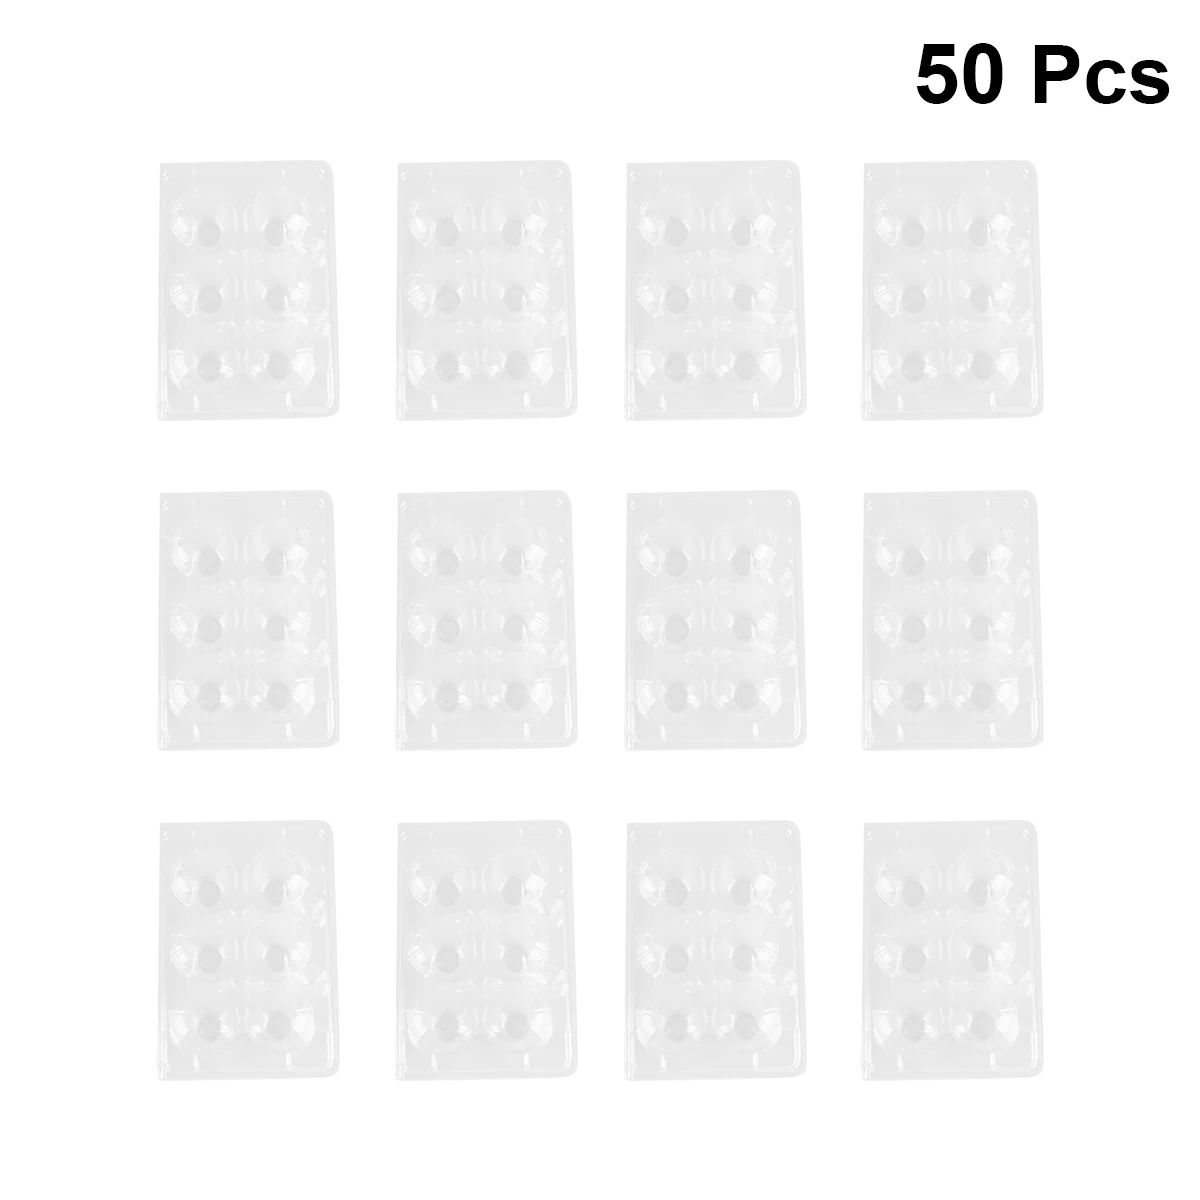 Bandeja de plástico transparente para huevos de codorniz, contenedor de embalaje, caja protectora para huevos de codorniz, 50 unidades, 6 rejillas